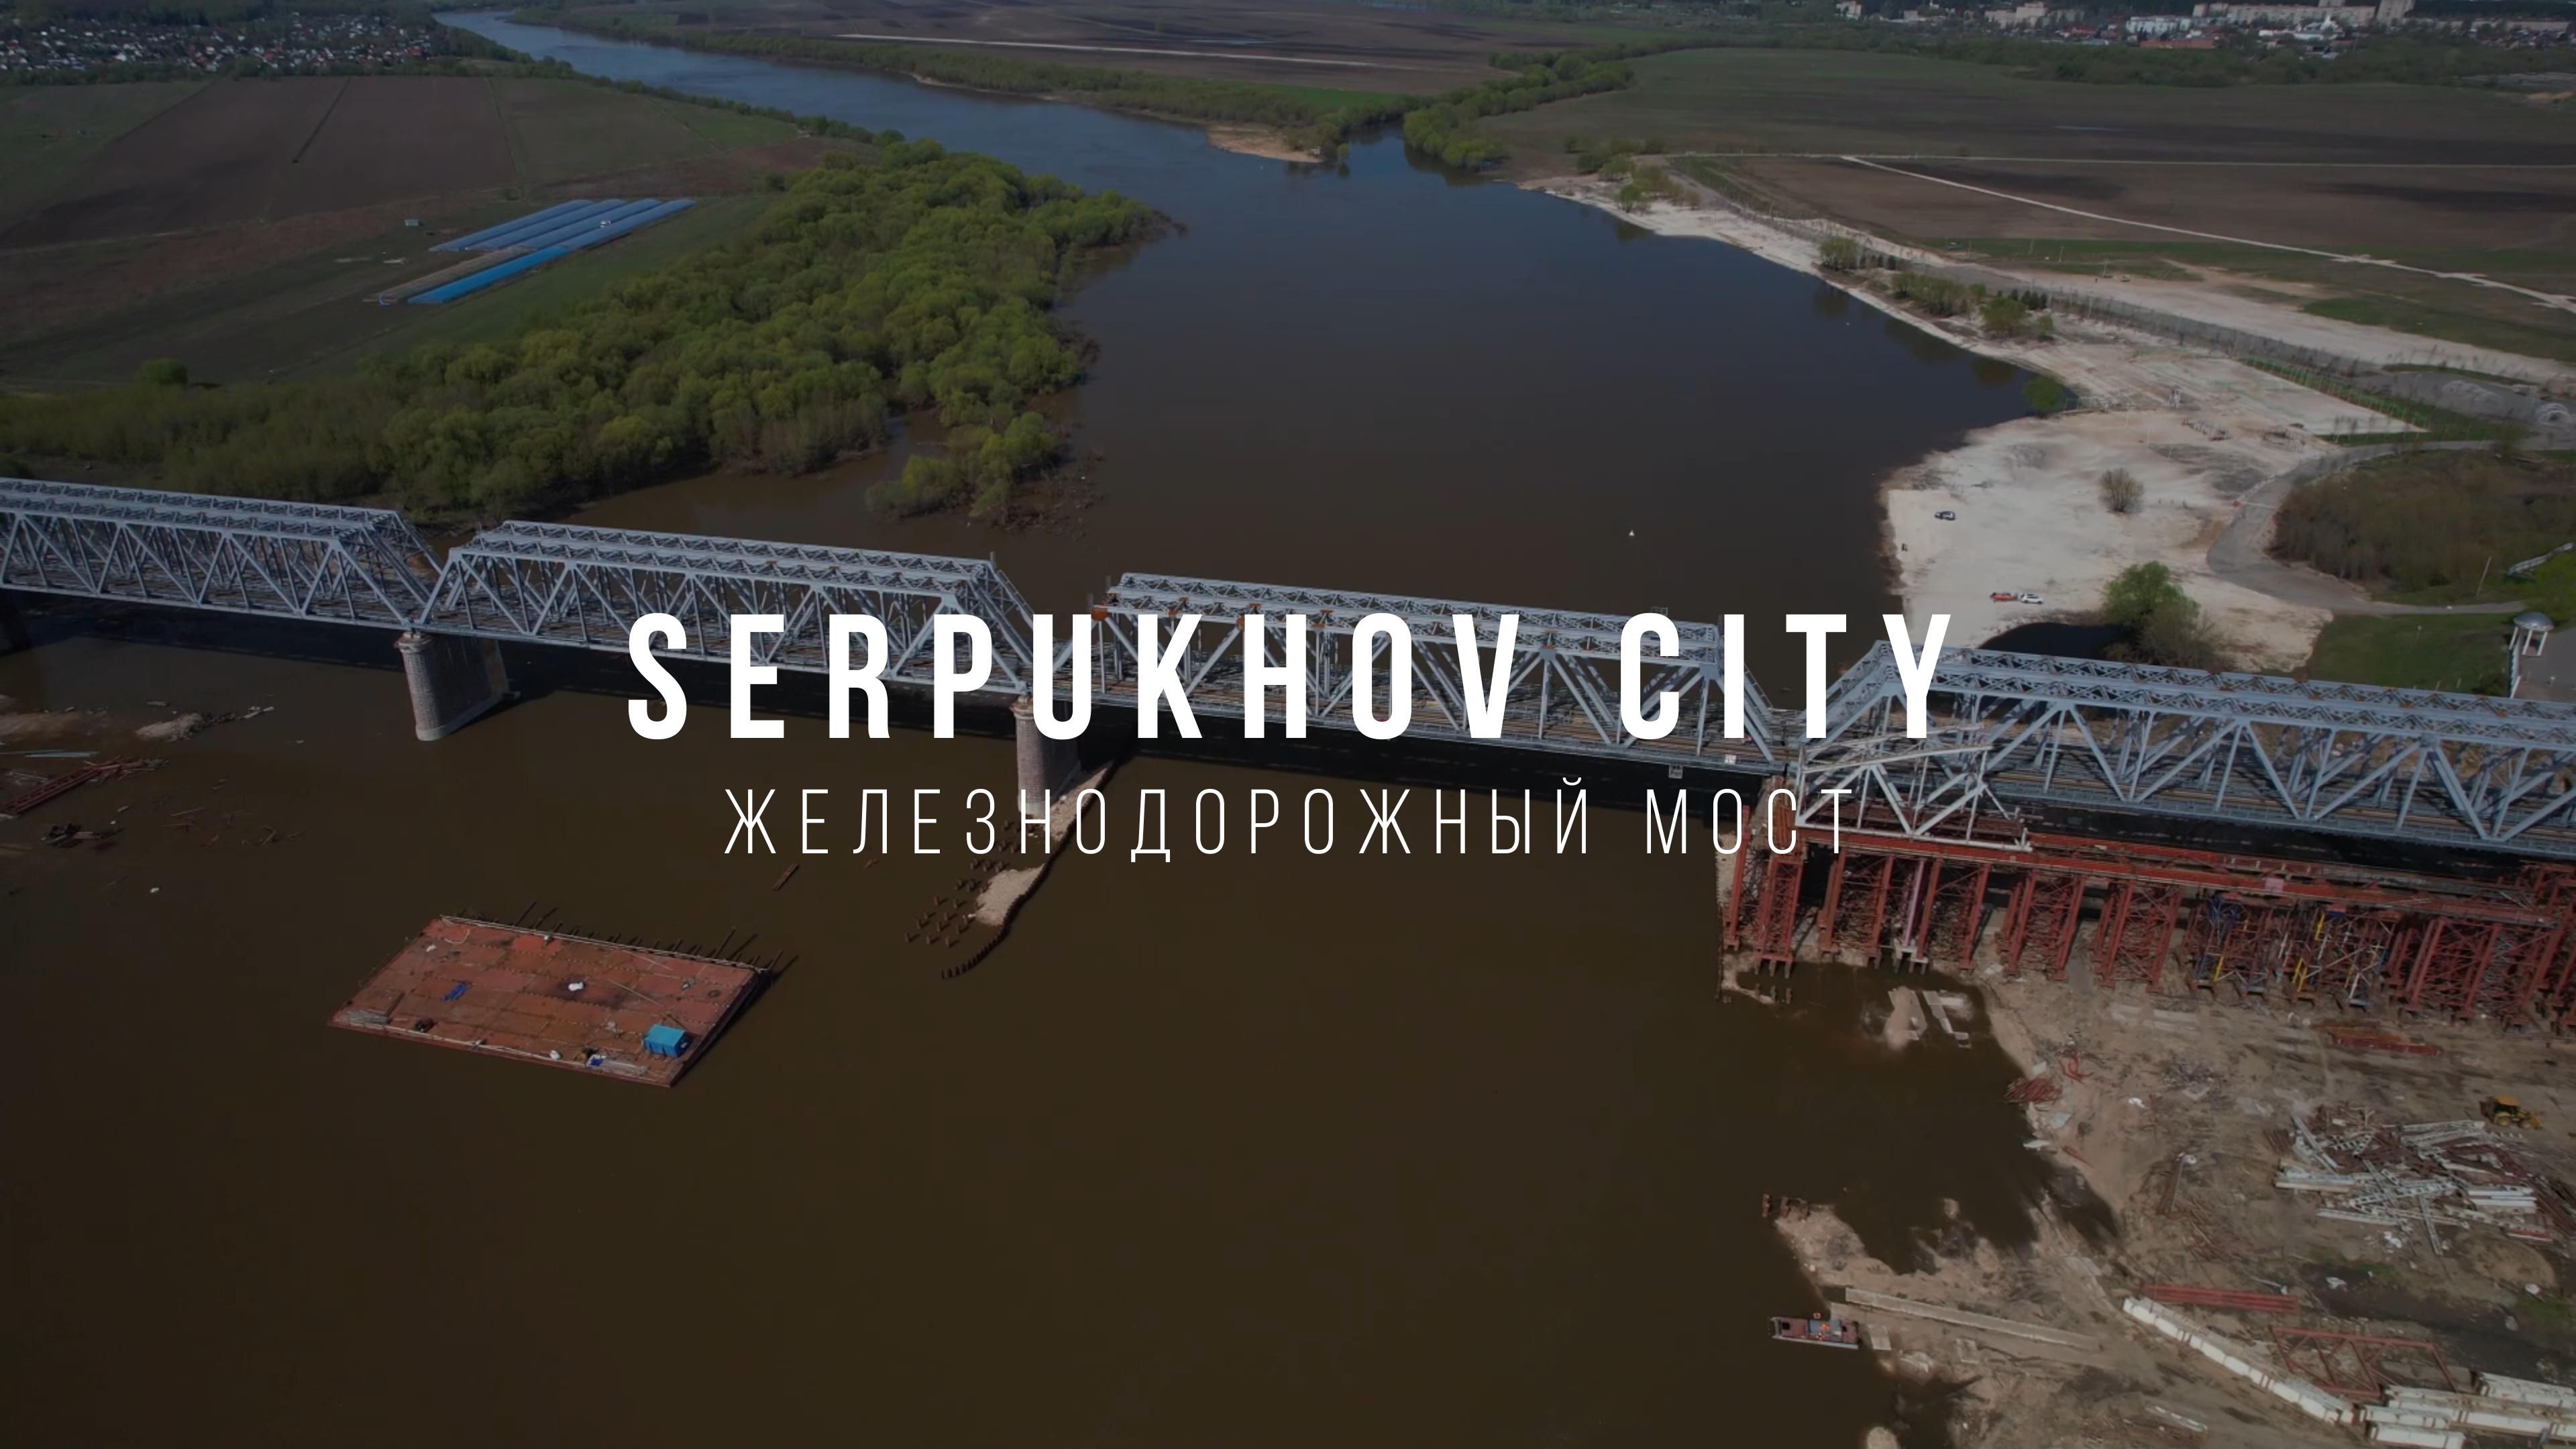 Serpukhov Railway Bridge. Серпуховский железнодорожный мост